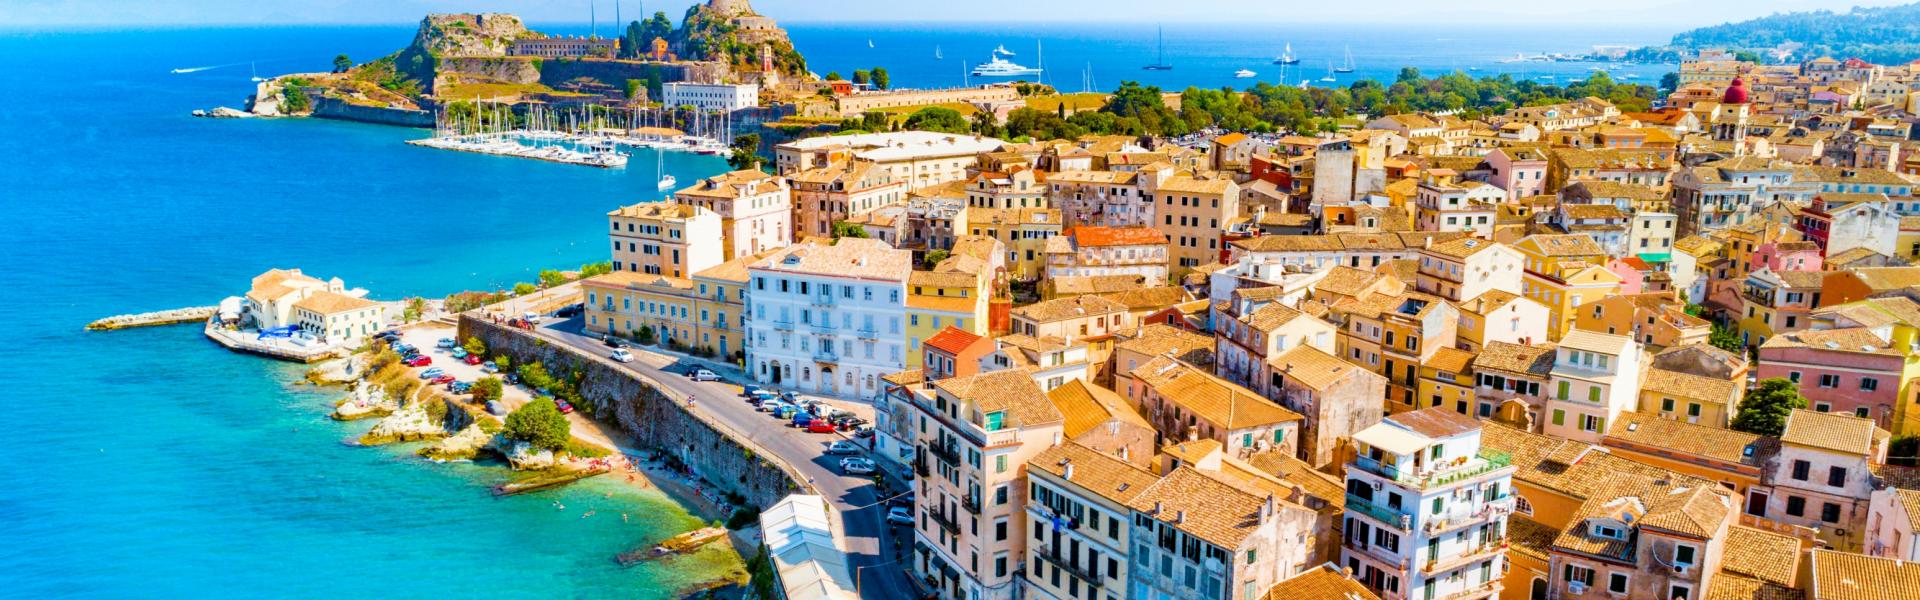 Ferienwohnungen & Ferienhäuser für Urlaub auf Korfu - Casamundo